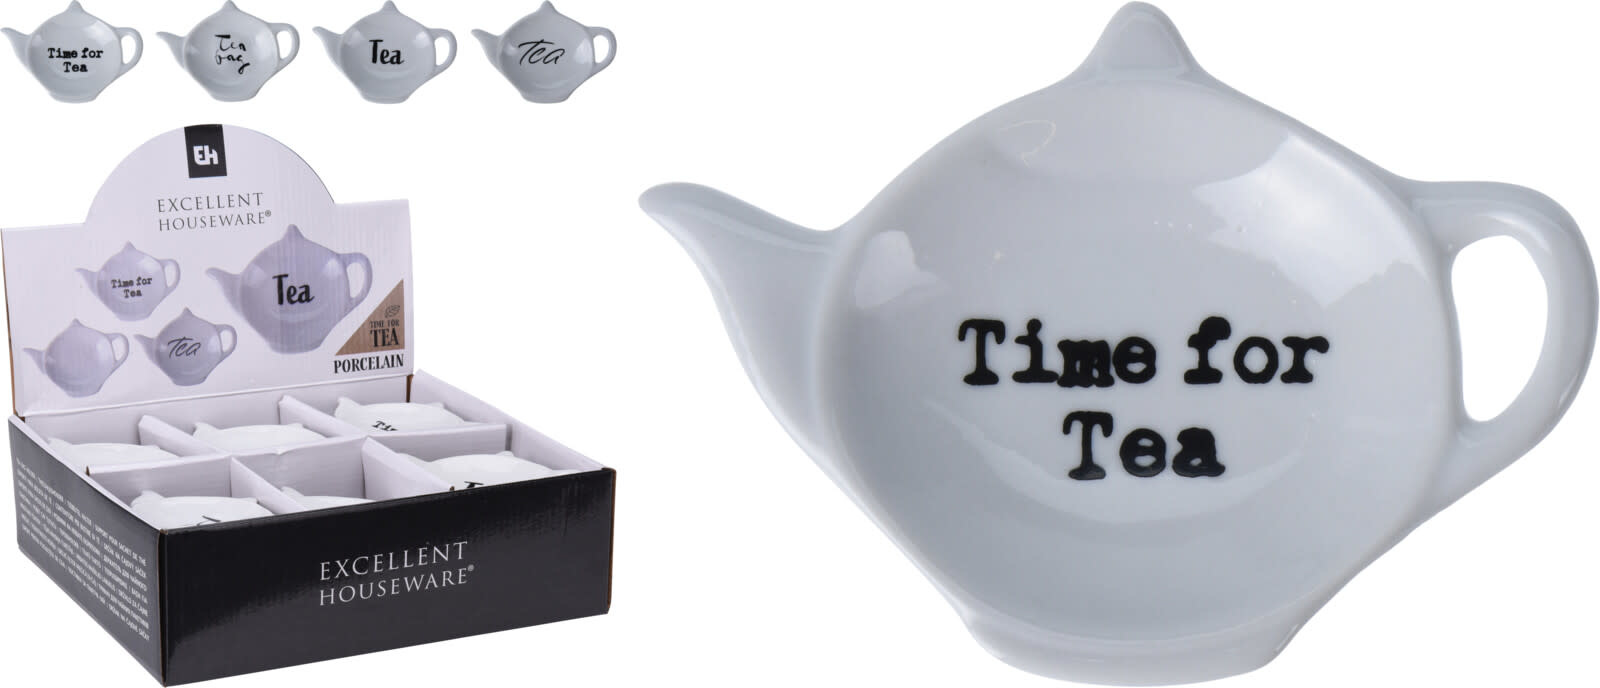 Koopman Tea Bag Holder Porcelain